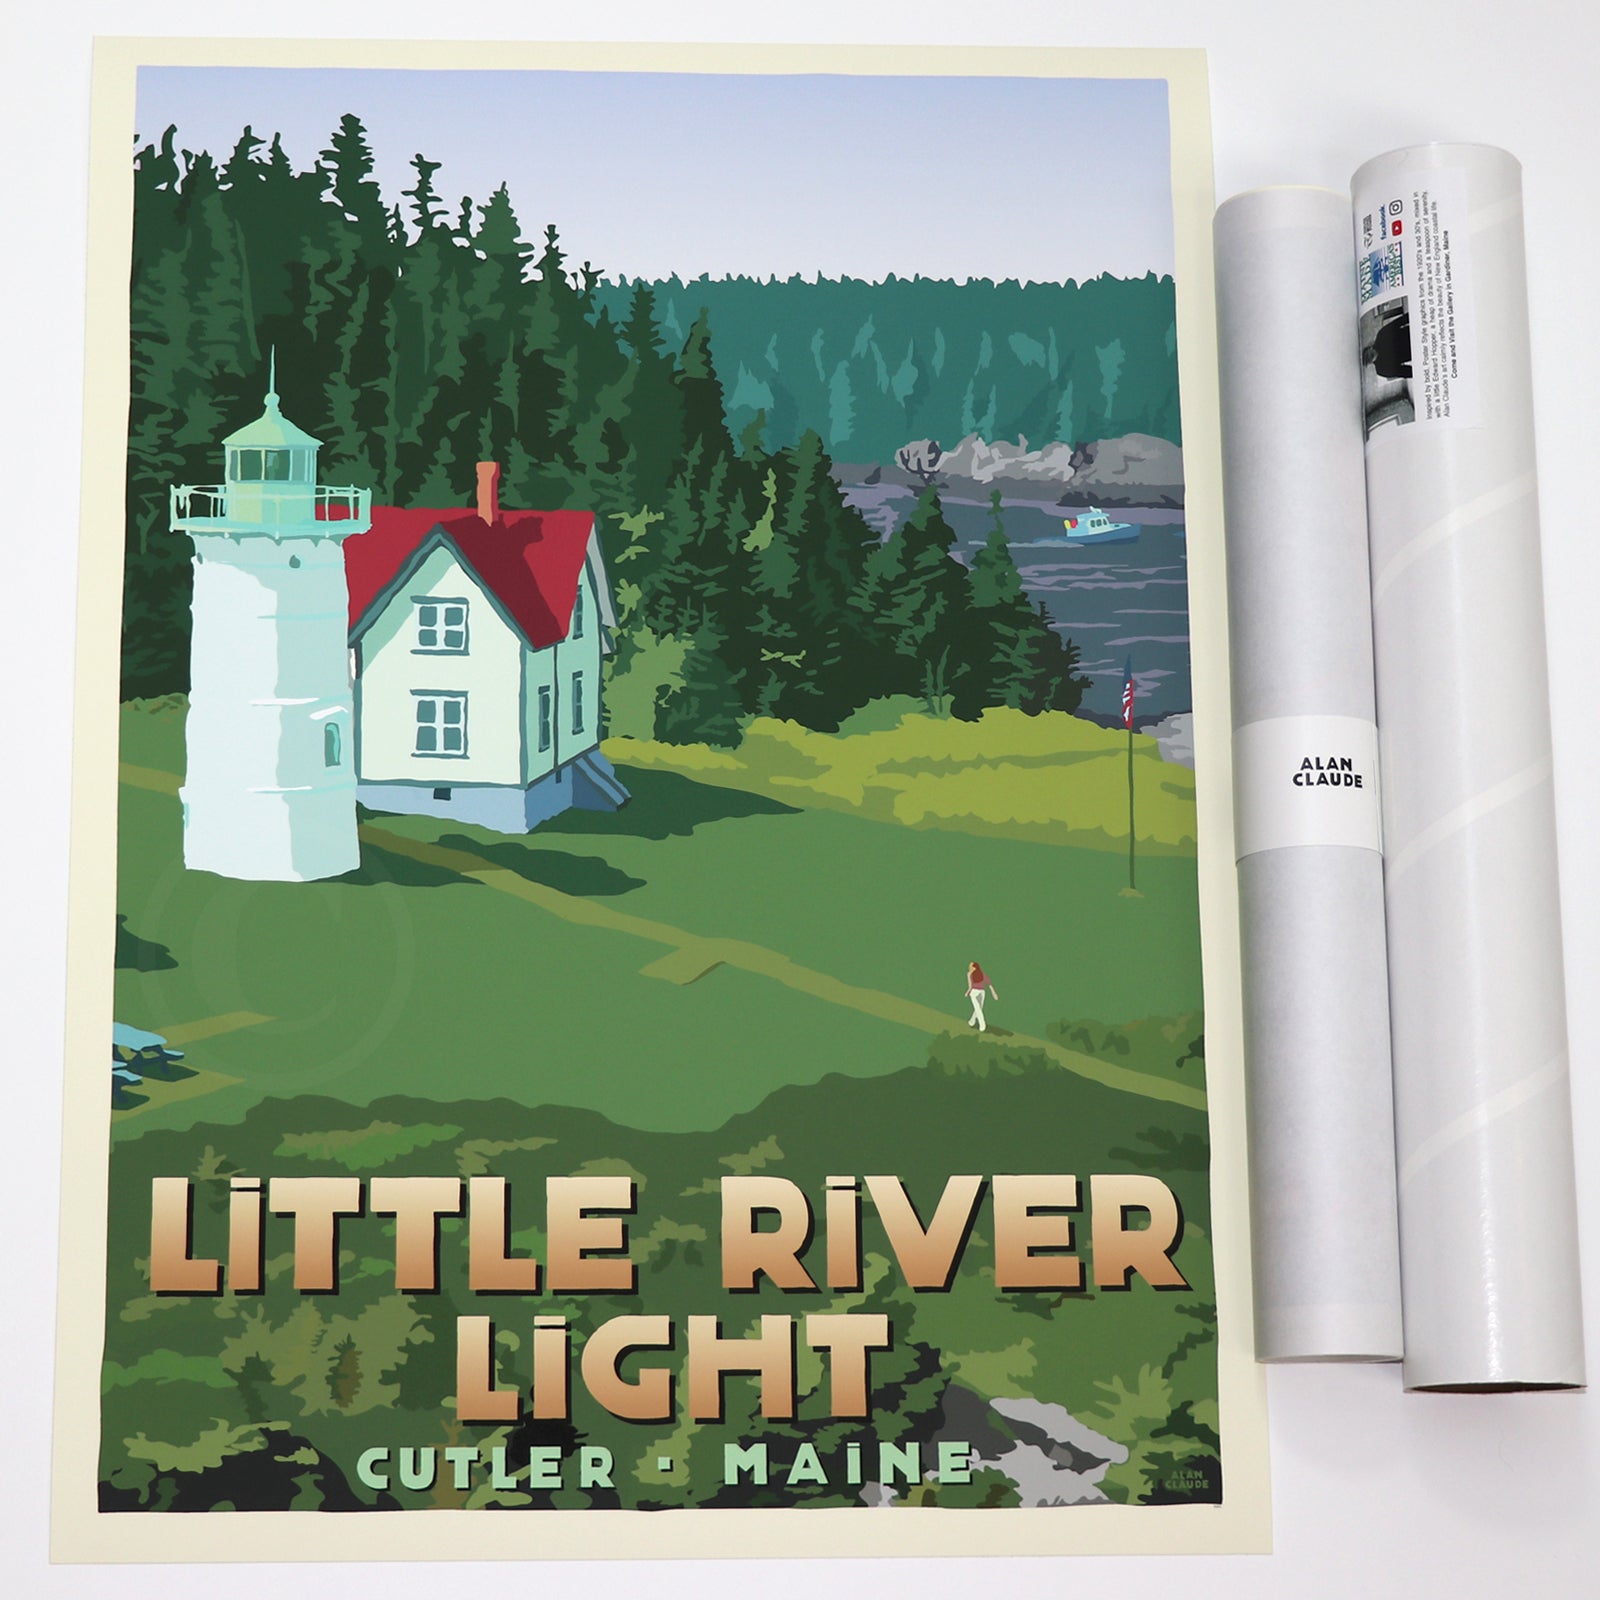 Little River Light Art Print 18" x 24" Travel Poster By Alan Claude - Cutler, Maine